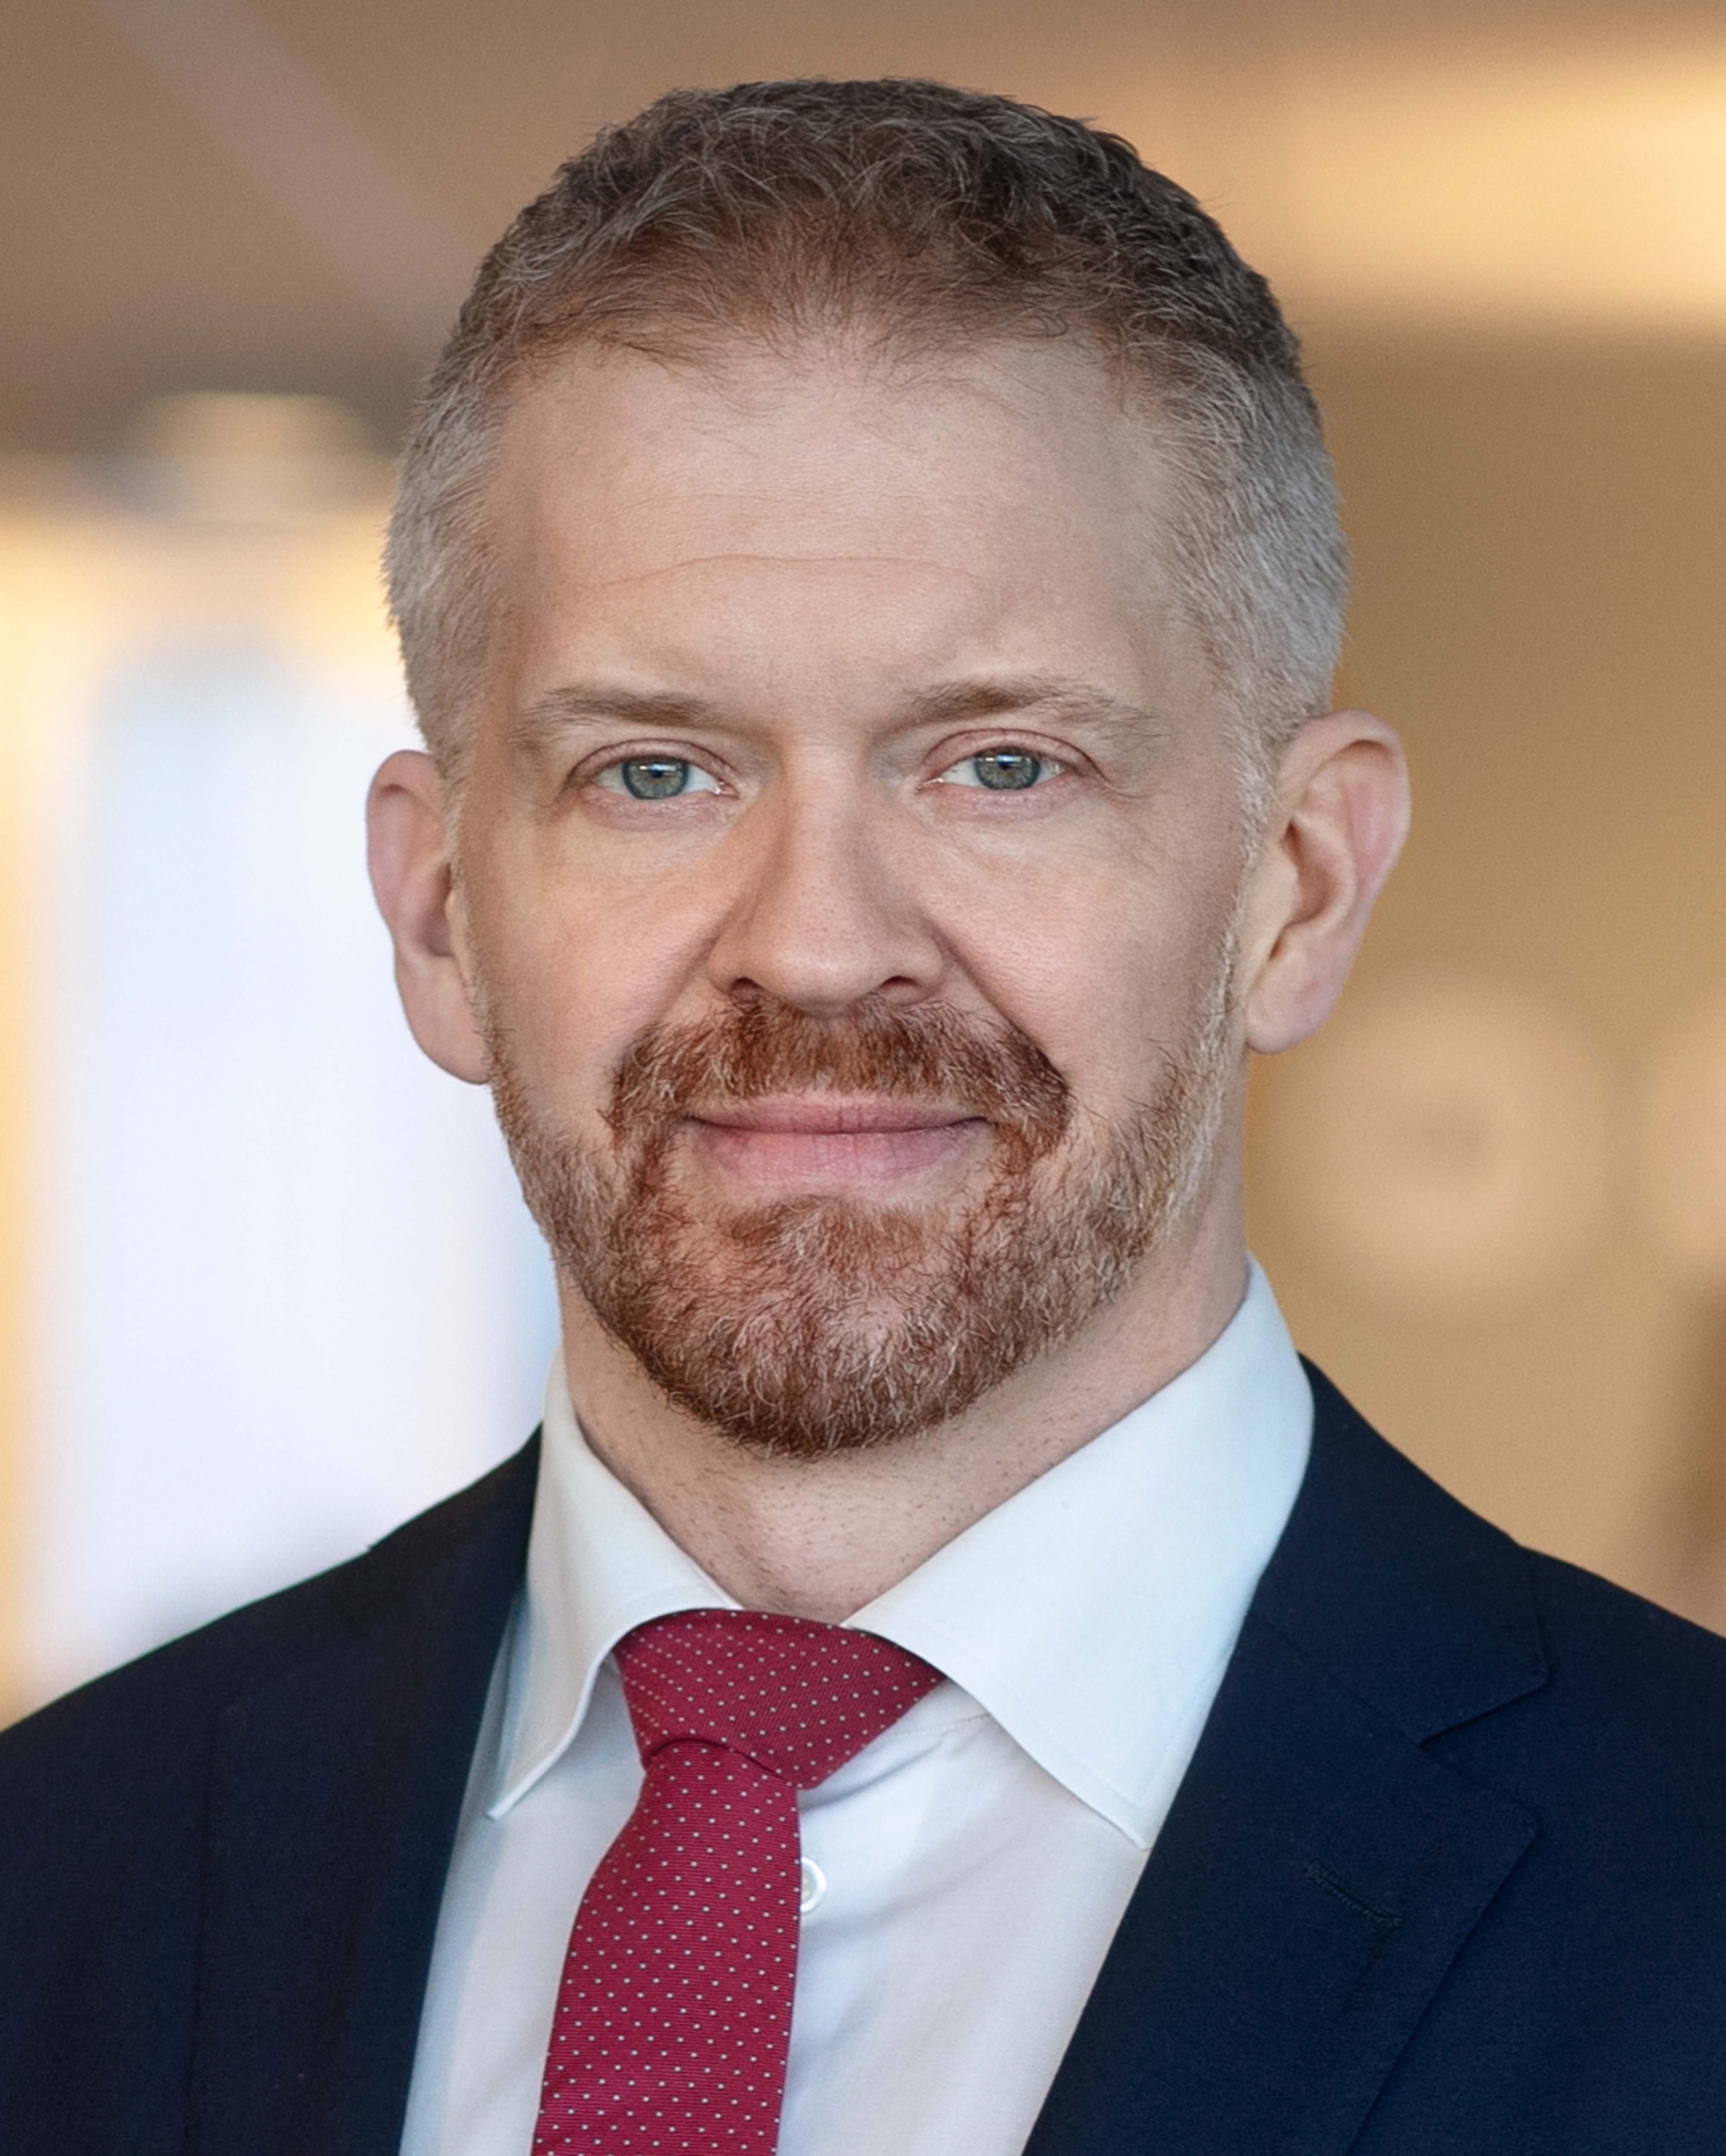 Kristofer Fröjd, Senior Vice President Strategi & affärsutveckling på Ellevio.